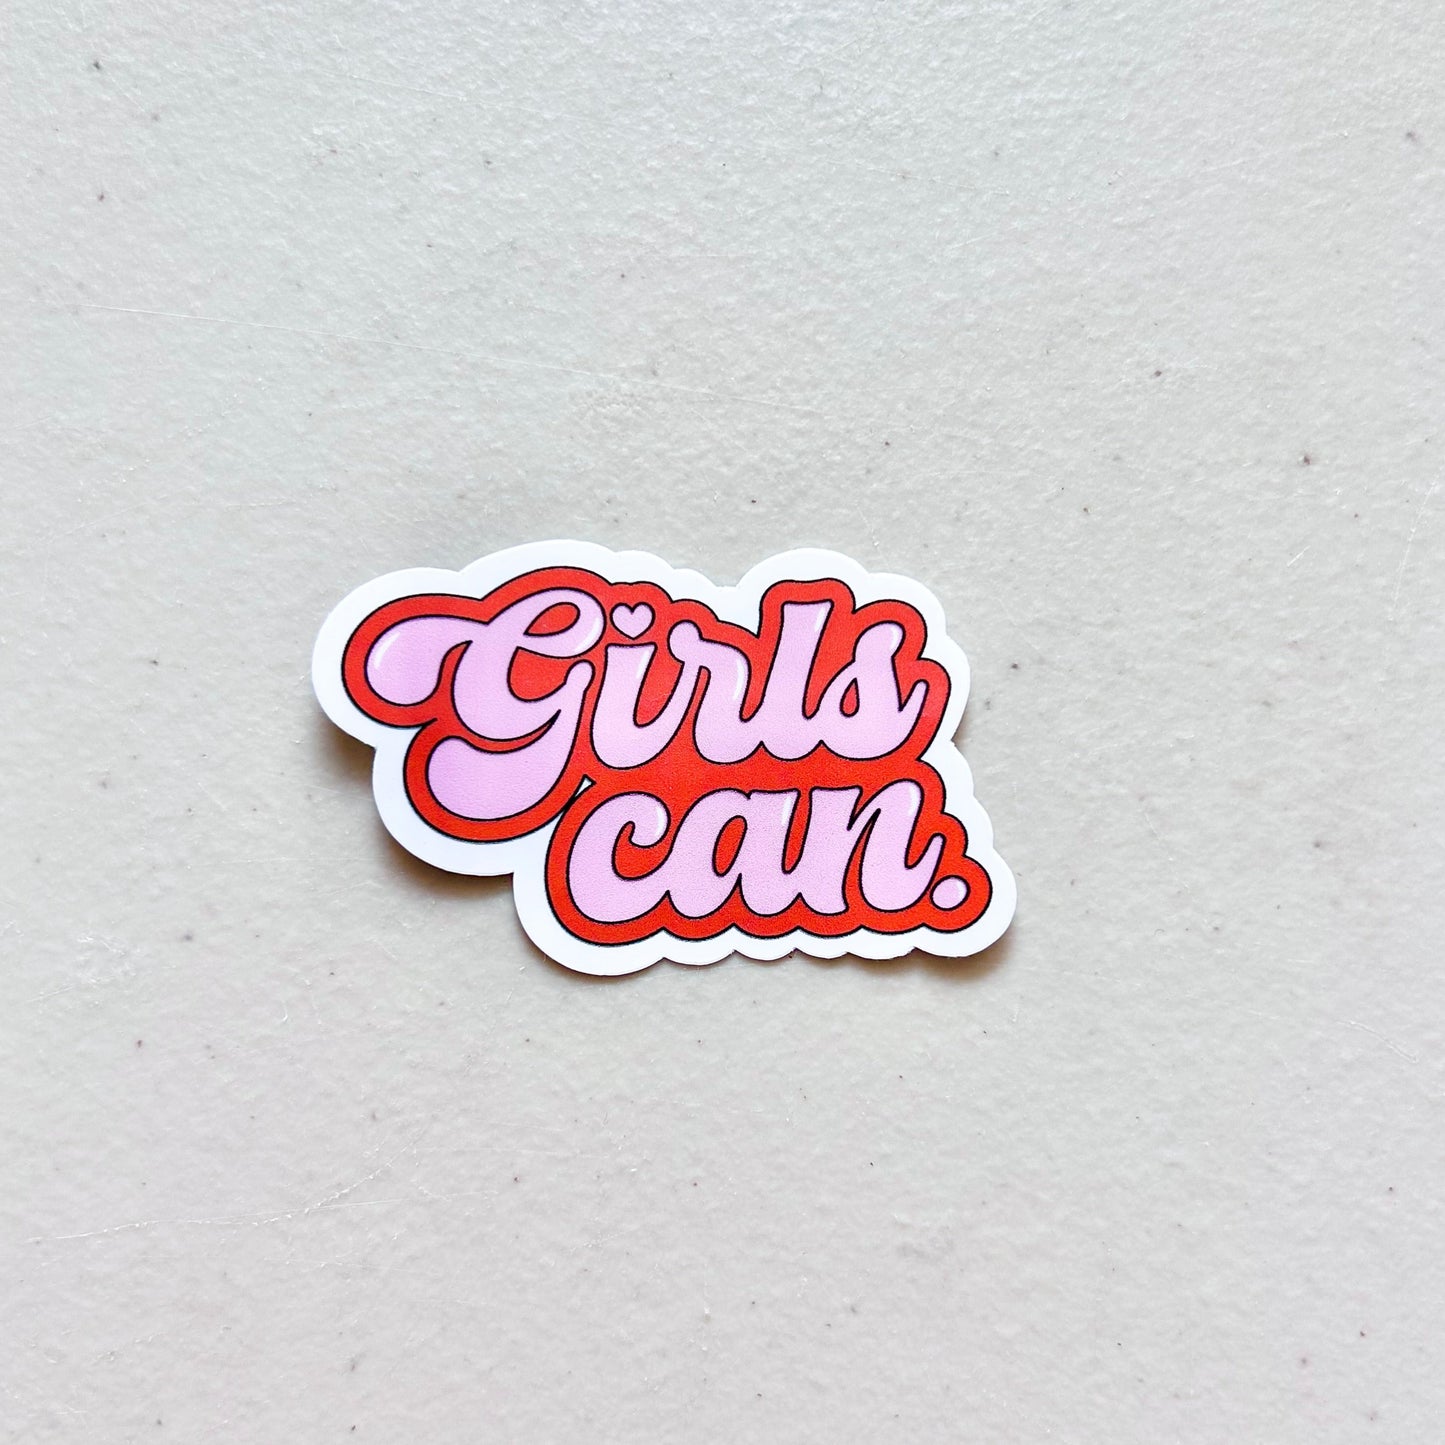 Girls CAN - Women Empowerment Sticker